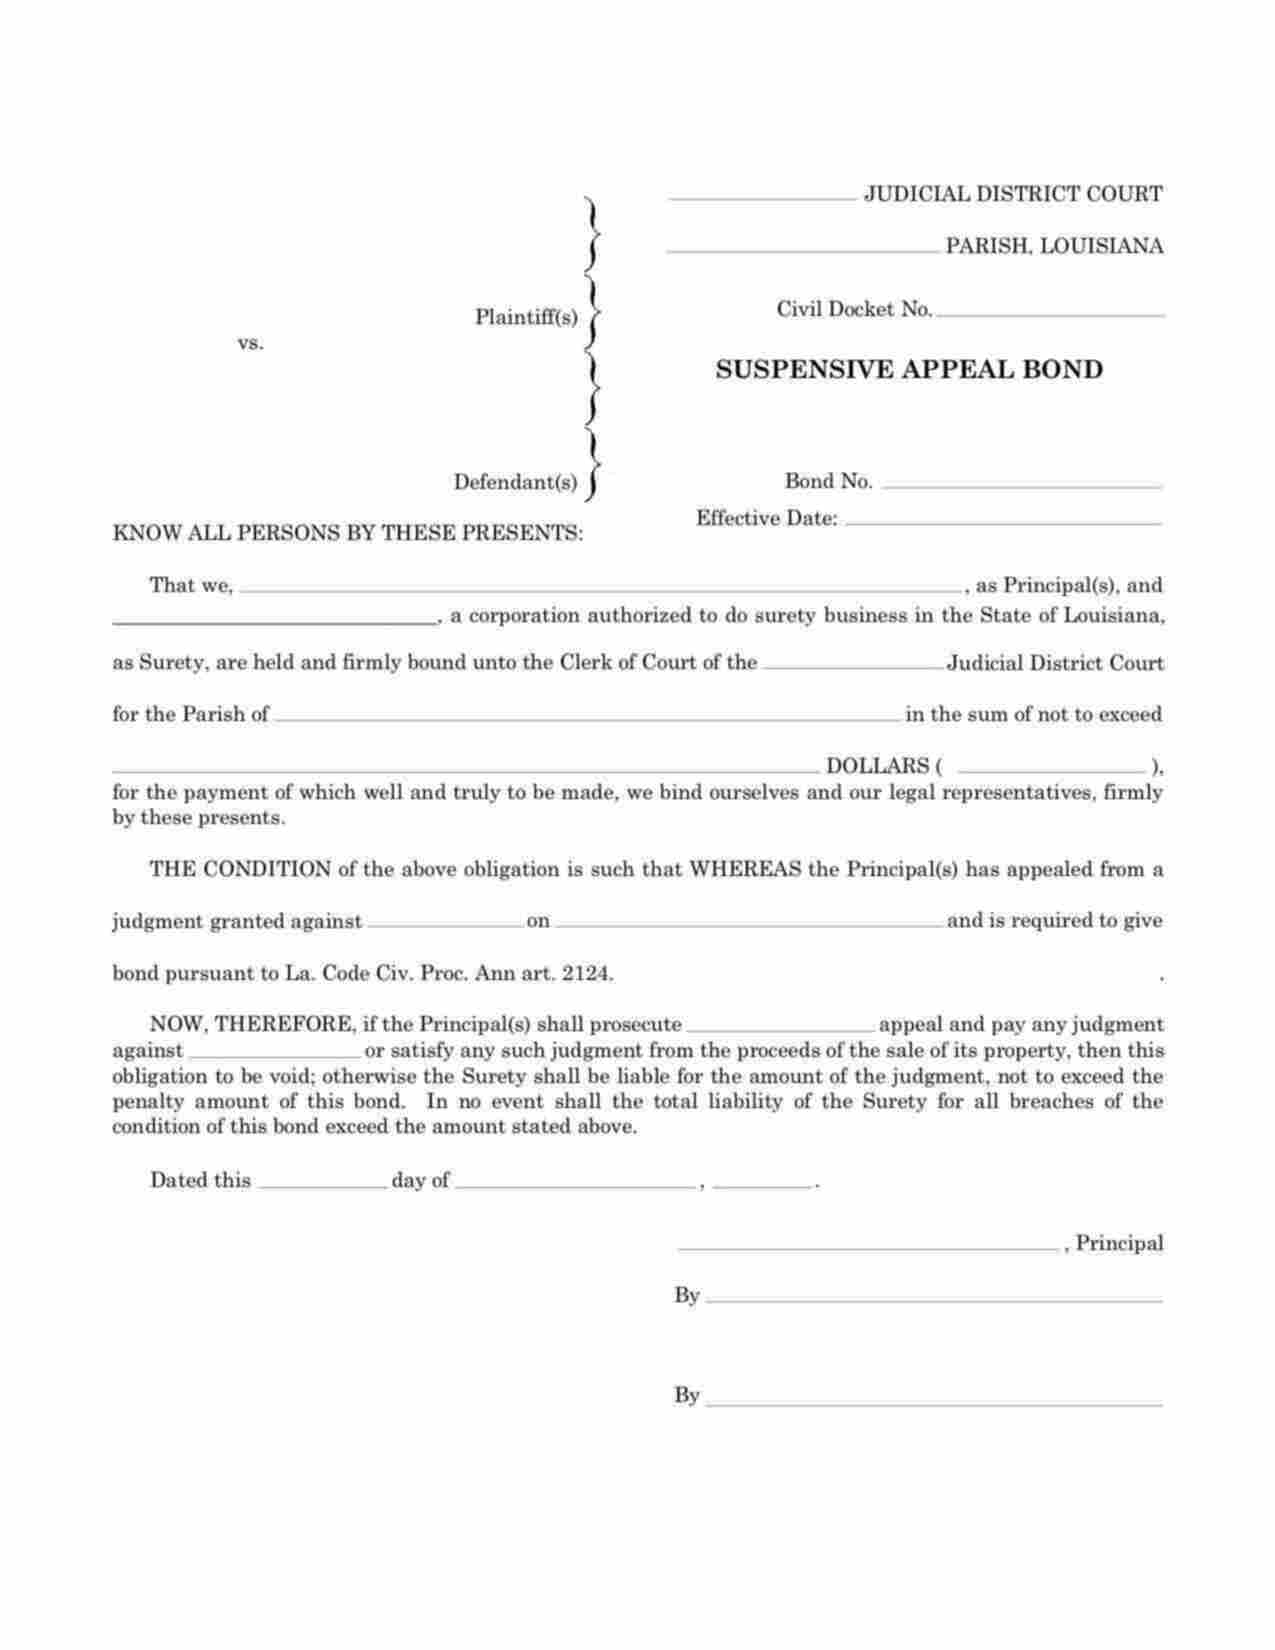 Louisiana Suspensive Appeal Bond Form